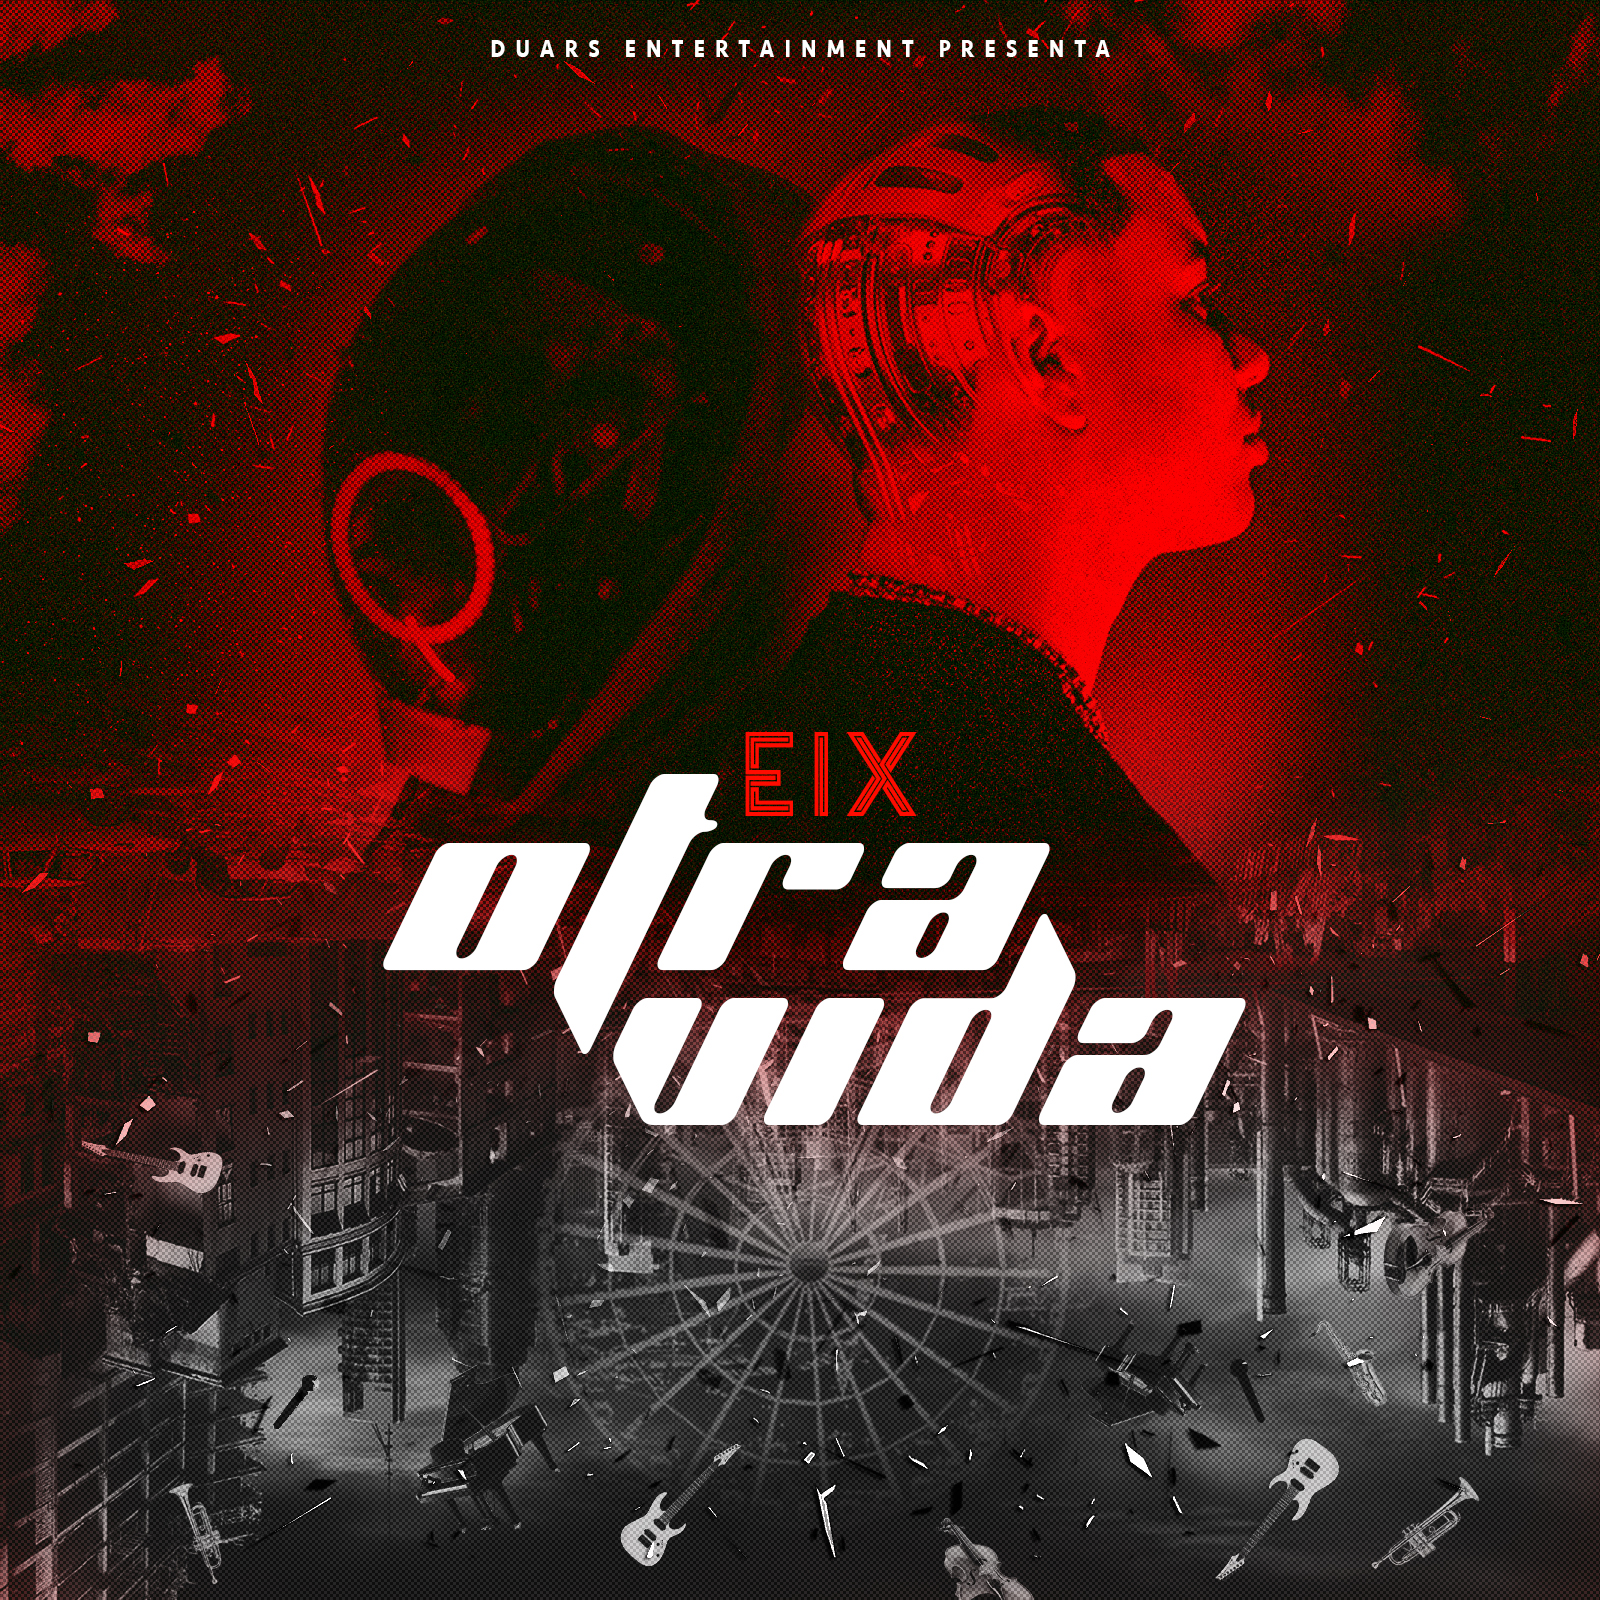 Eix estrena su nuevo álbum musical ‘Otra Vida’